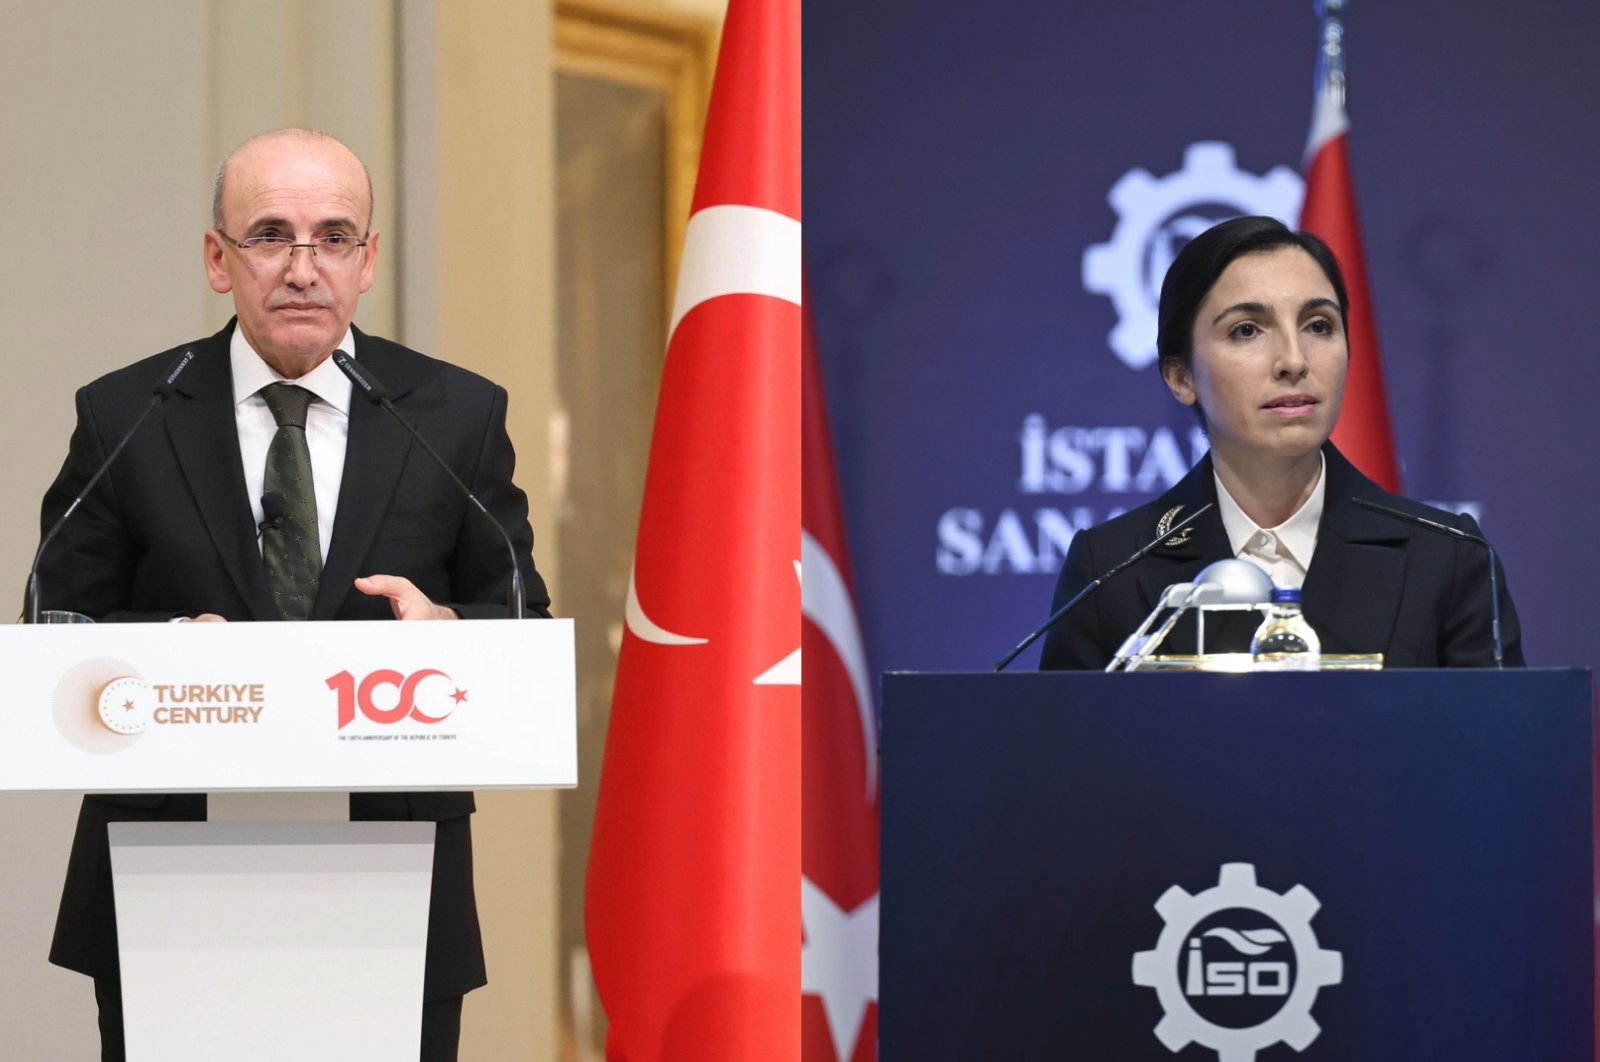 Erkan, Şimşek to present Türkiye’s policies to investors in US